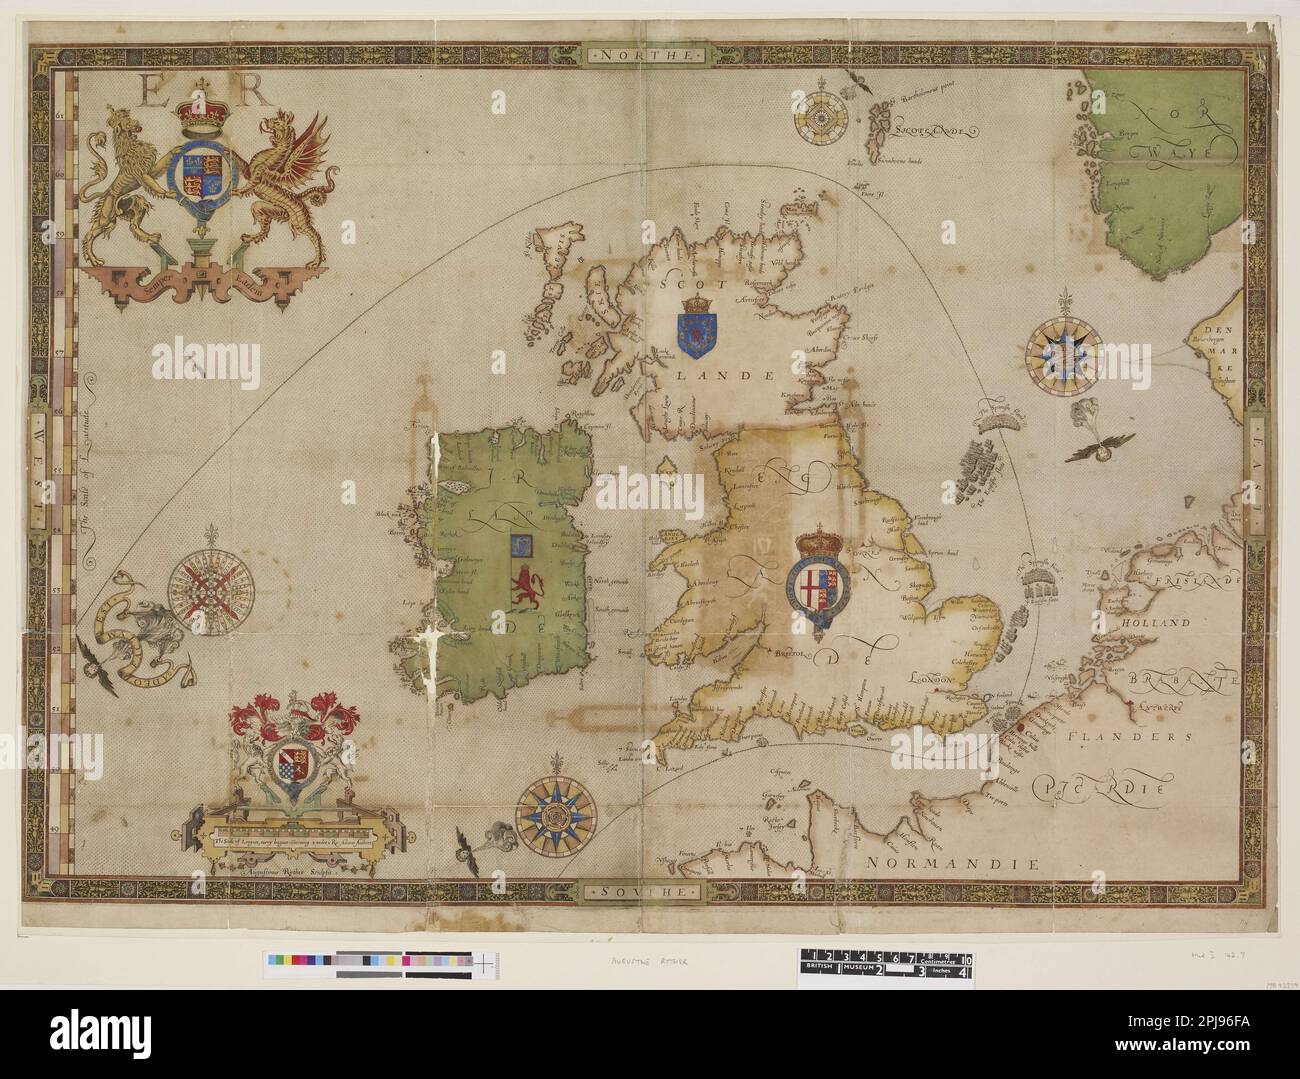 Le piastre Armada. Targa 12: Una mappa della Gran Bretagna e dell'Irlanda, che mostra i percorsi delle flotte spagnola e inglese nel 1588. 1590Engraving con colorazione a mano. MUSEO: BRITISH MUSEUM, LONDRES, REGNO UNITO. Foto Stock